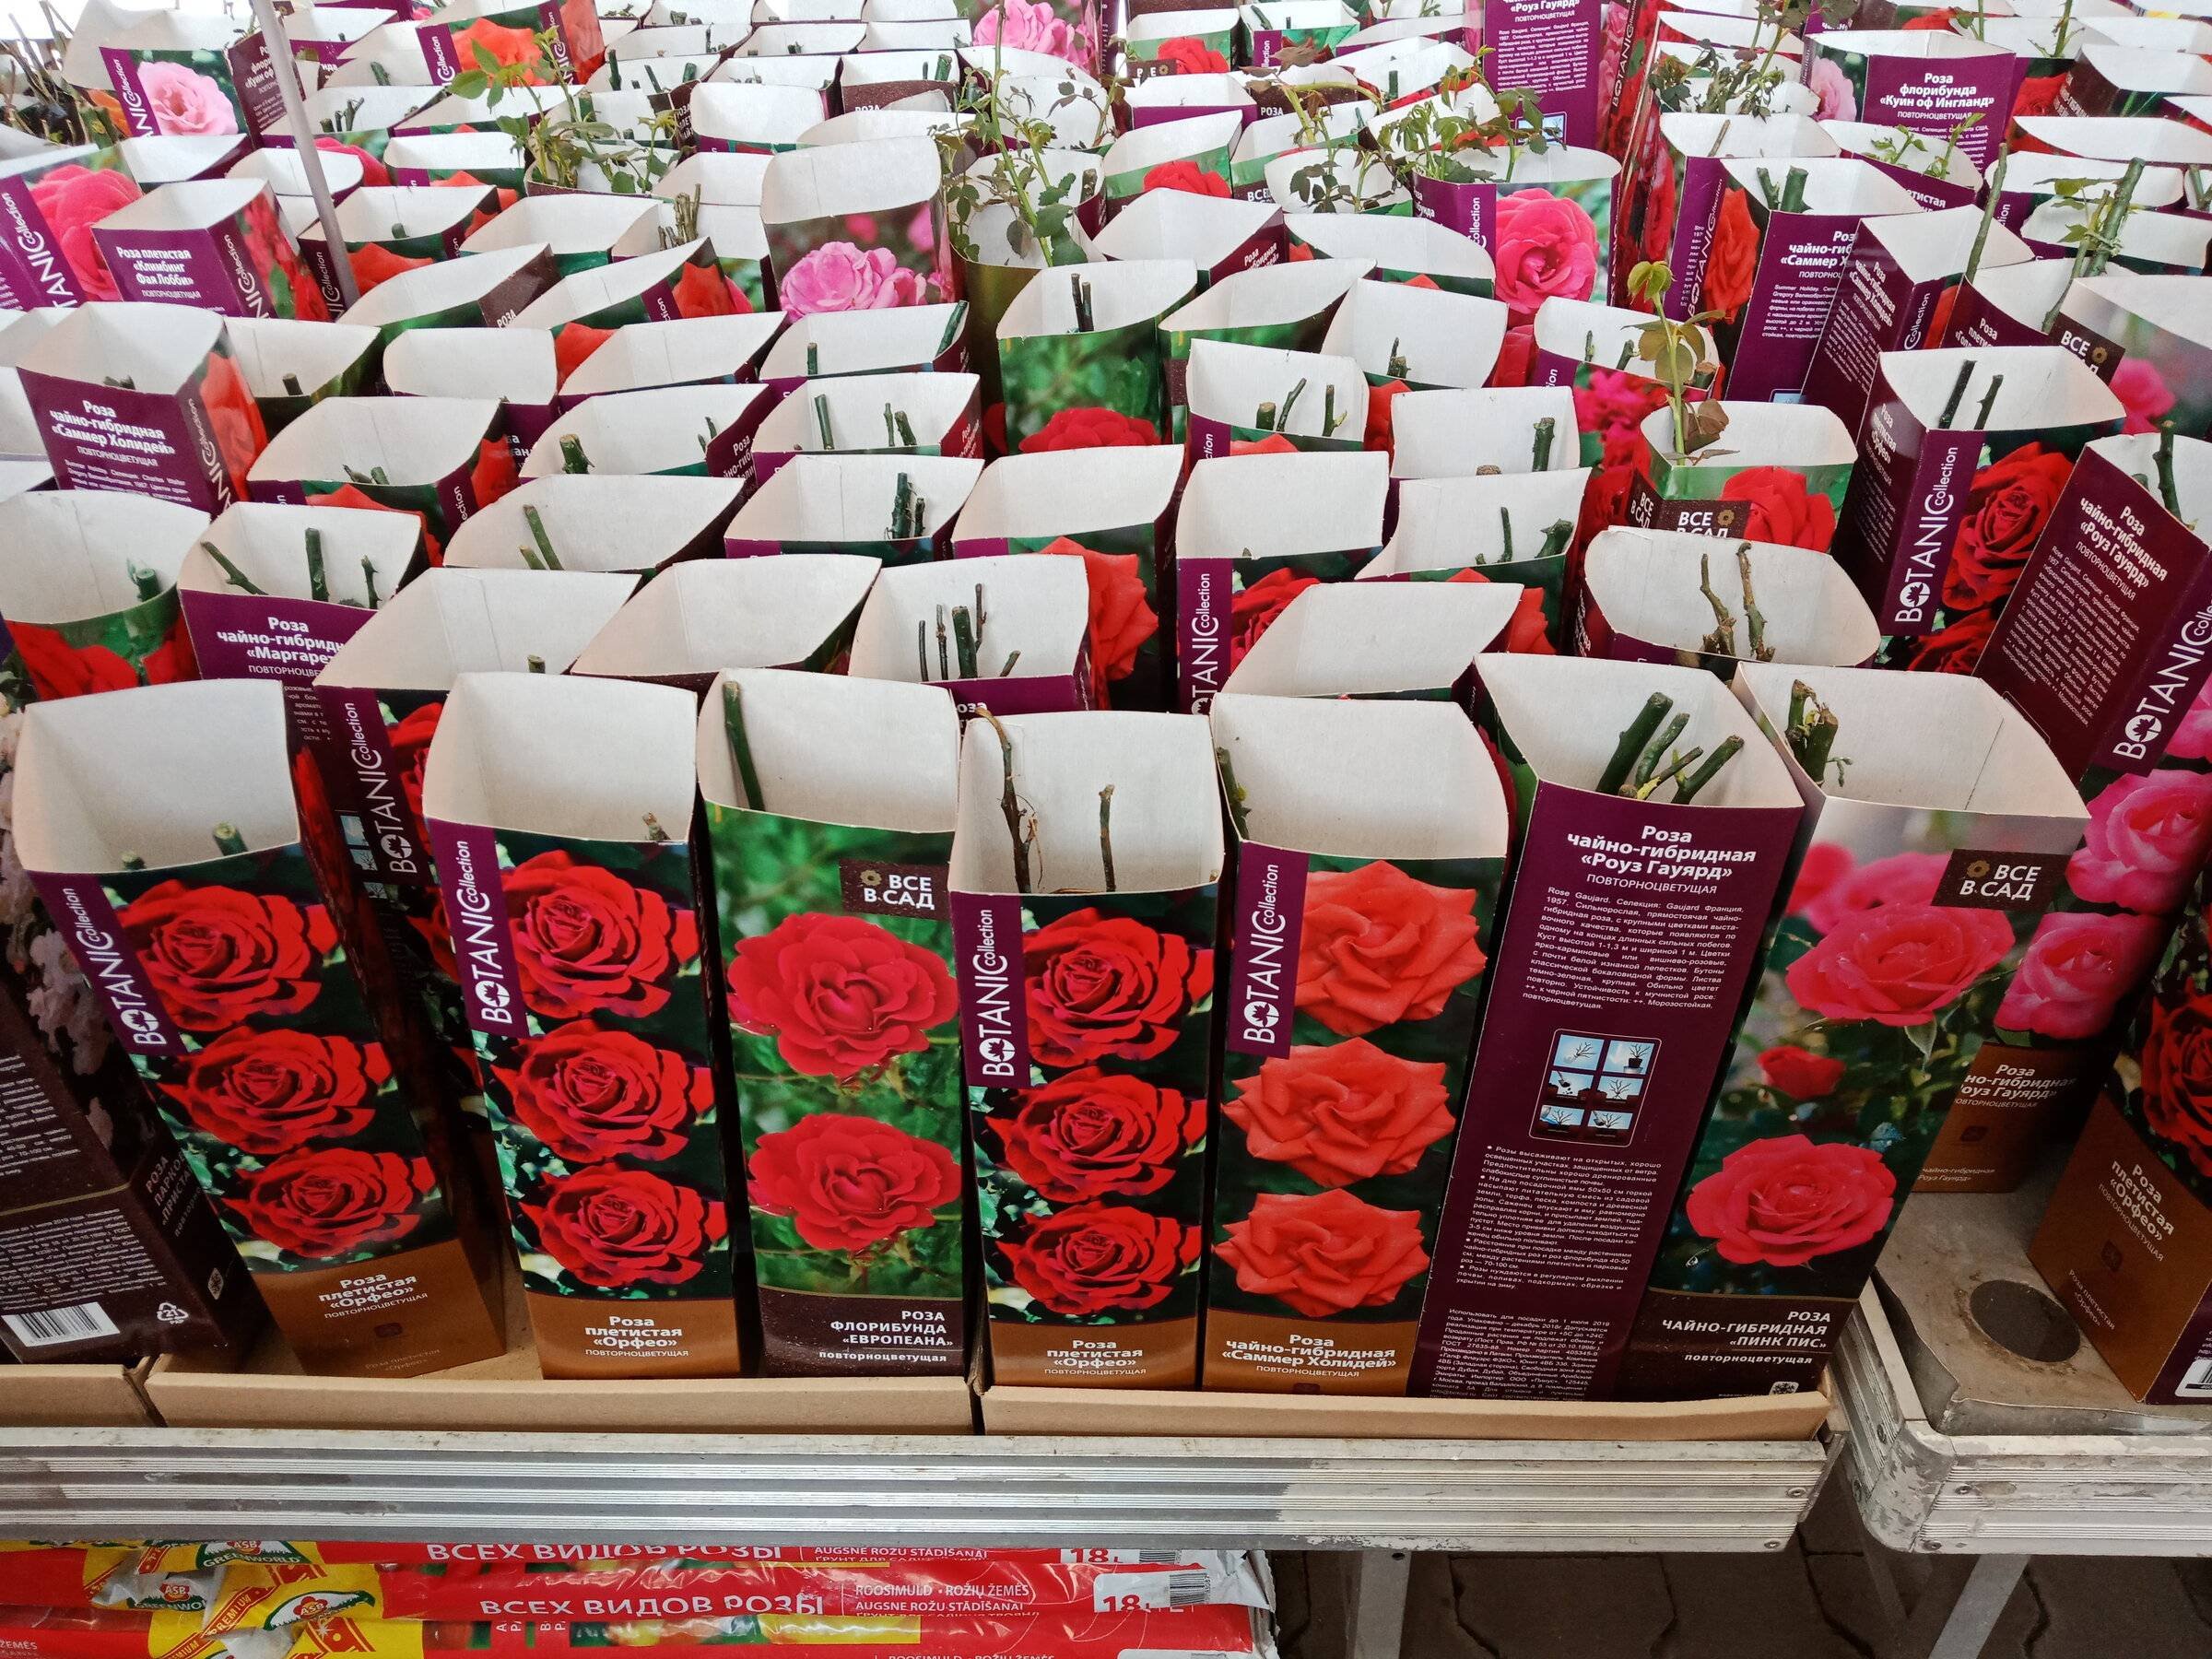 Саженцы розы екатеринбург. Саженцы роз в коробках. Рассада роз. Саженцы роз в Ашане. Сажгняы роз в коробочках в магазине.